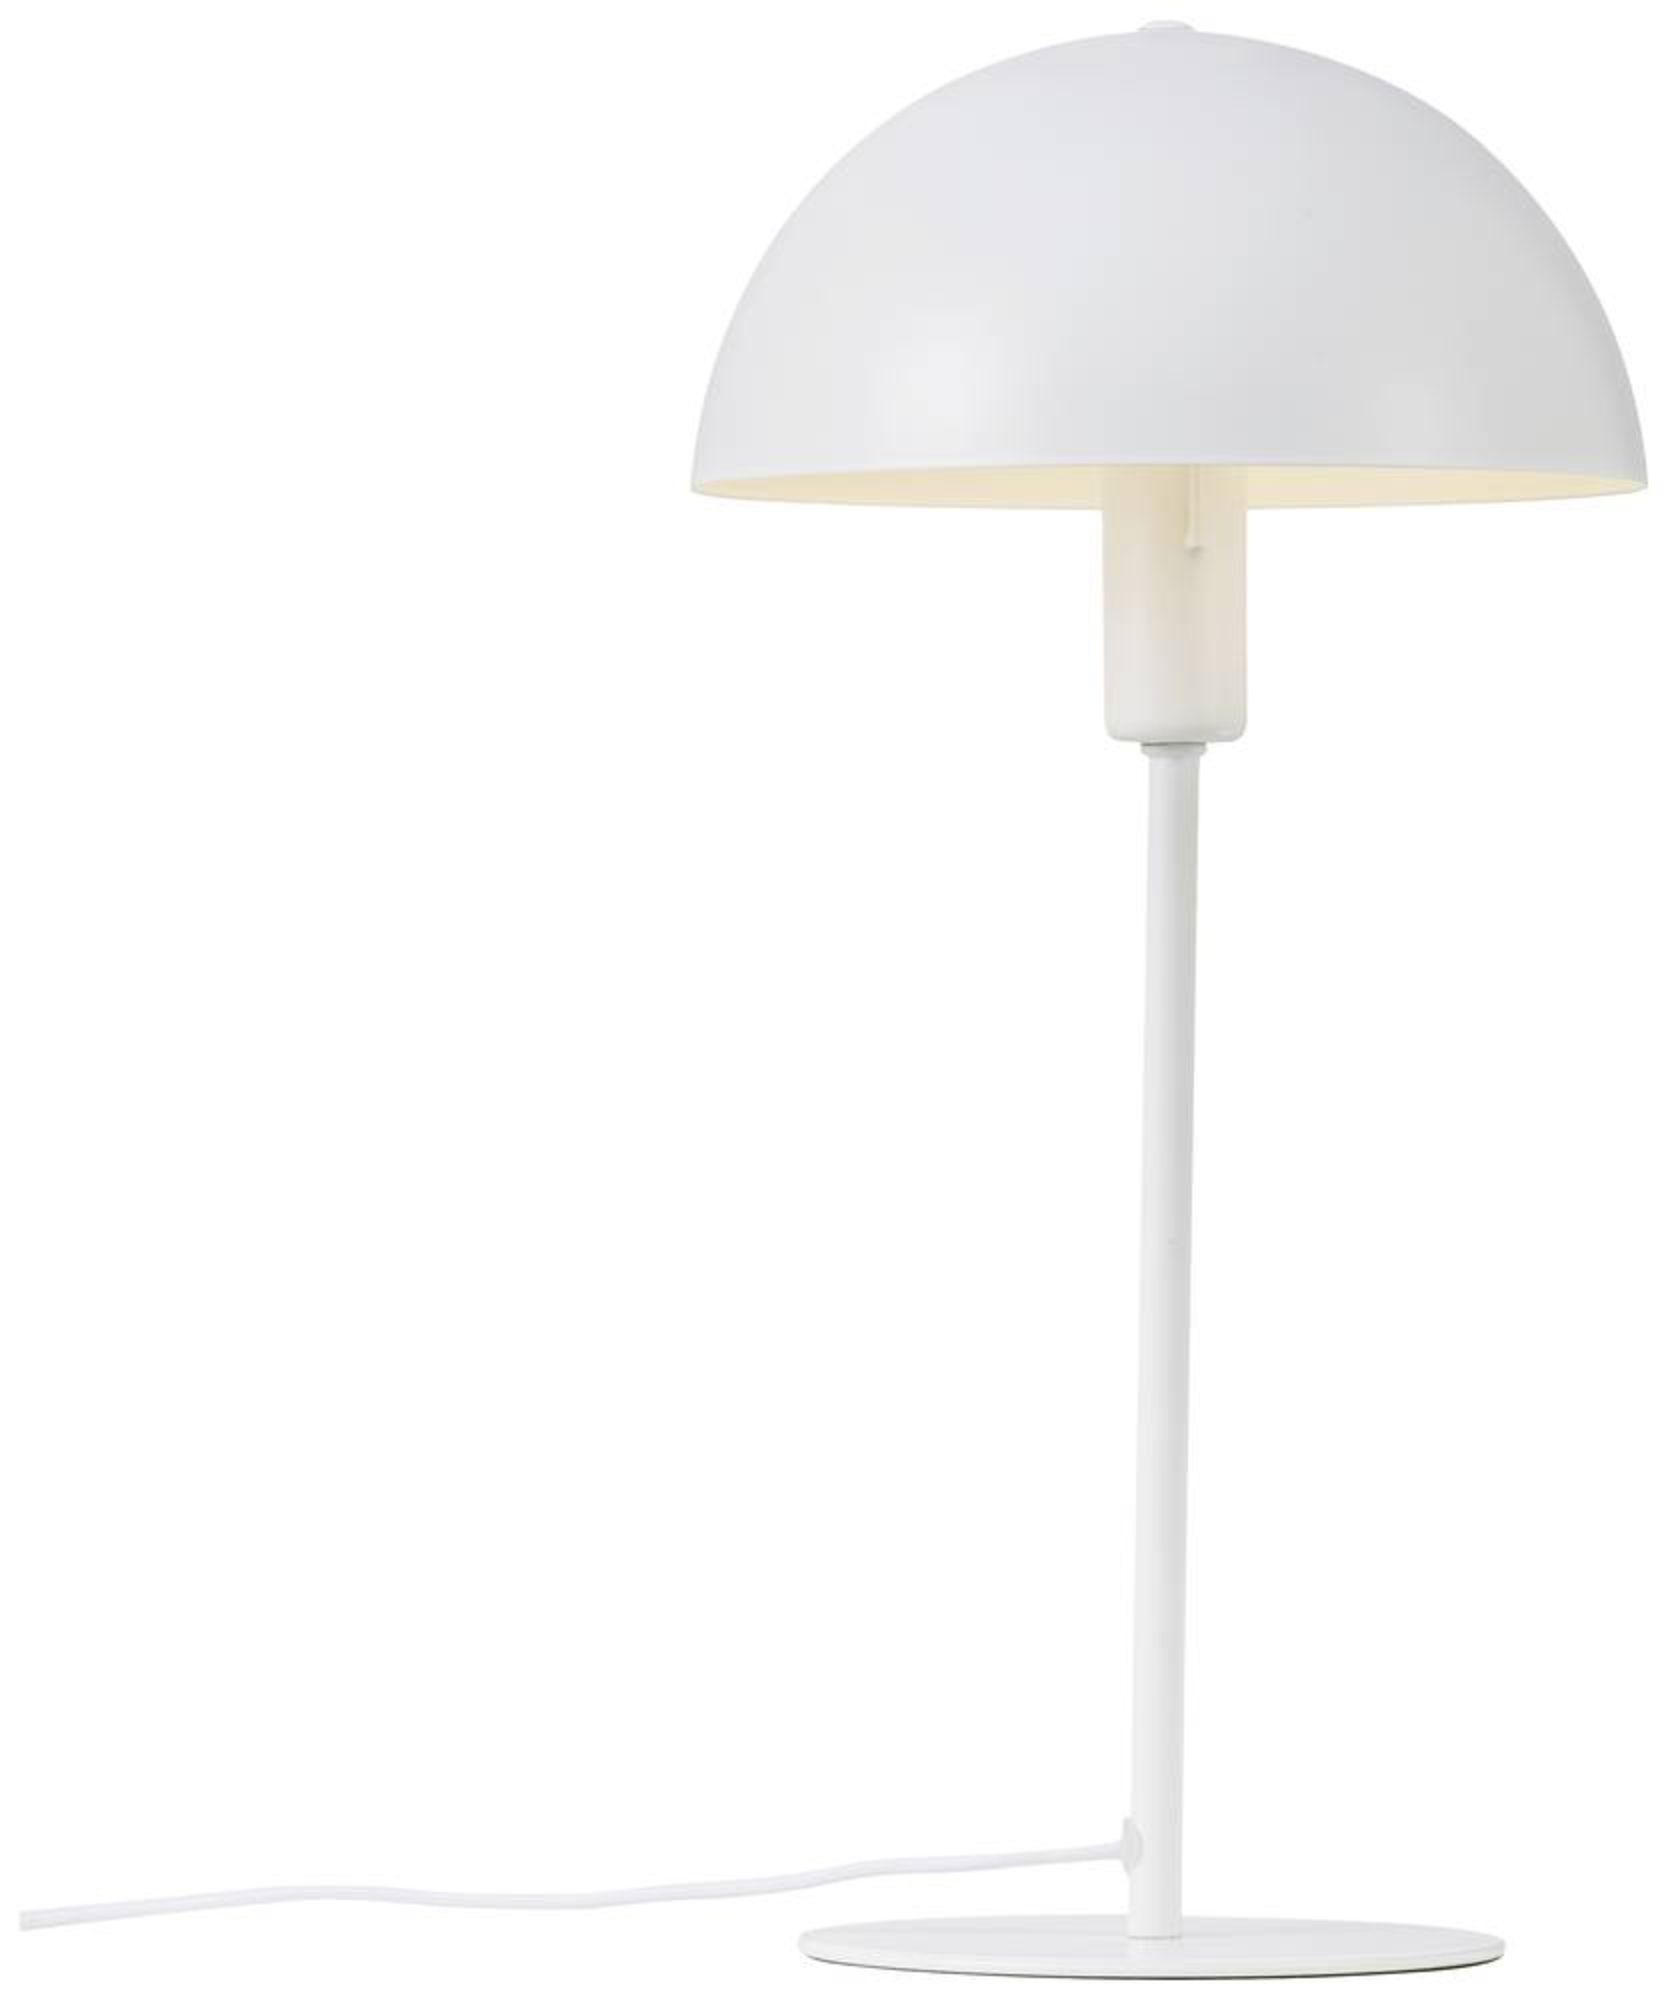 Nordlux Ellen 48555001 Tischlampe E14 Weiß online bestellen